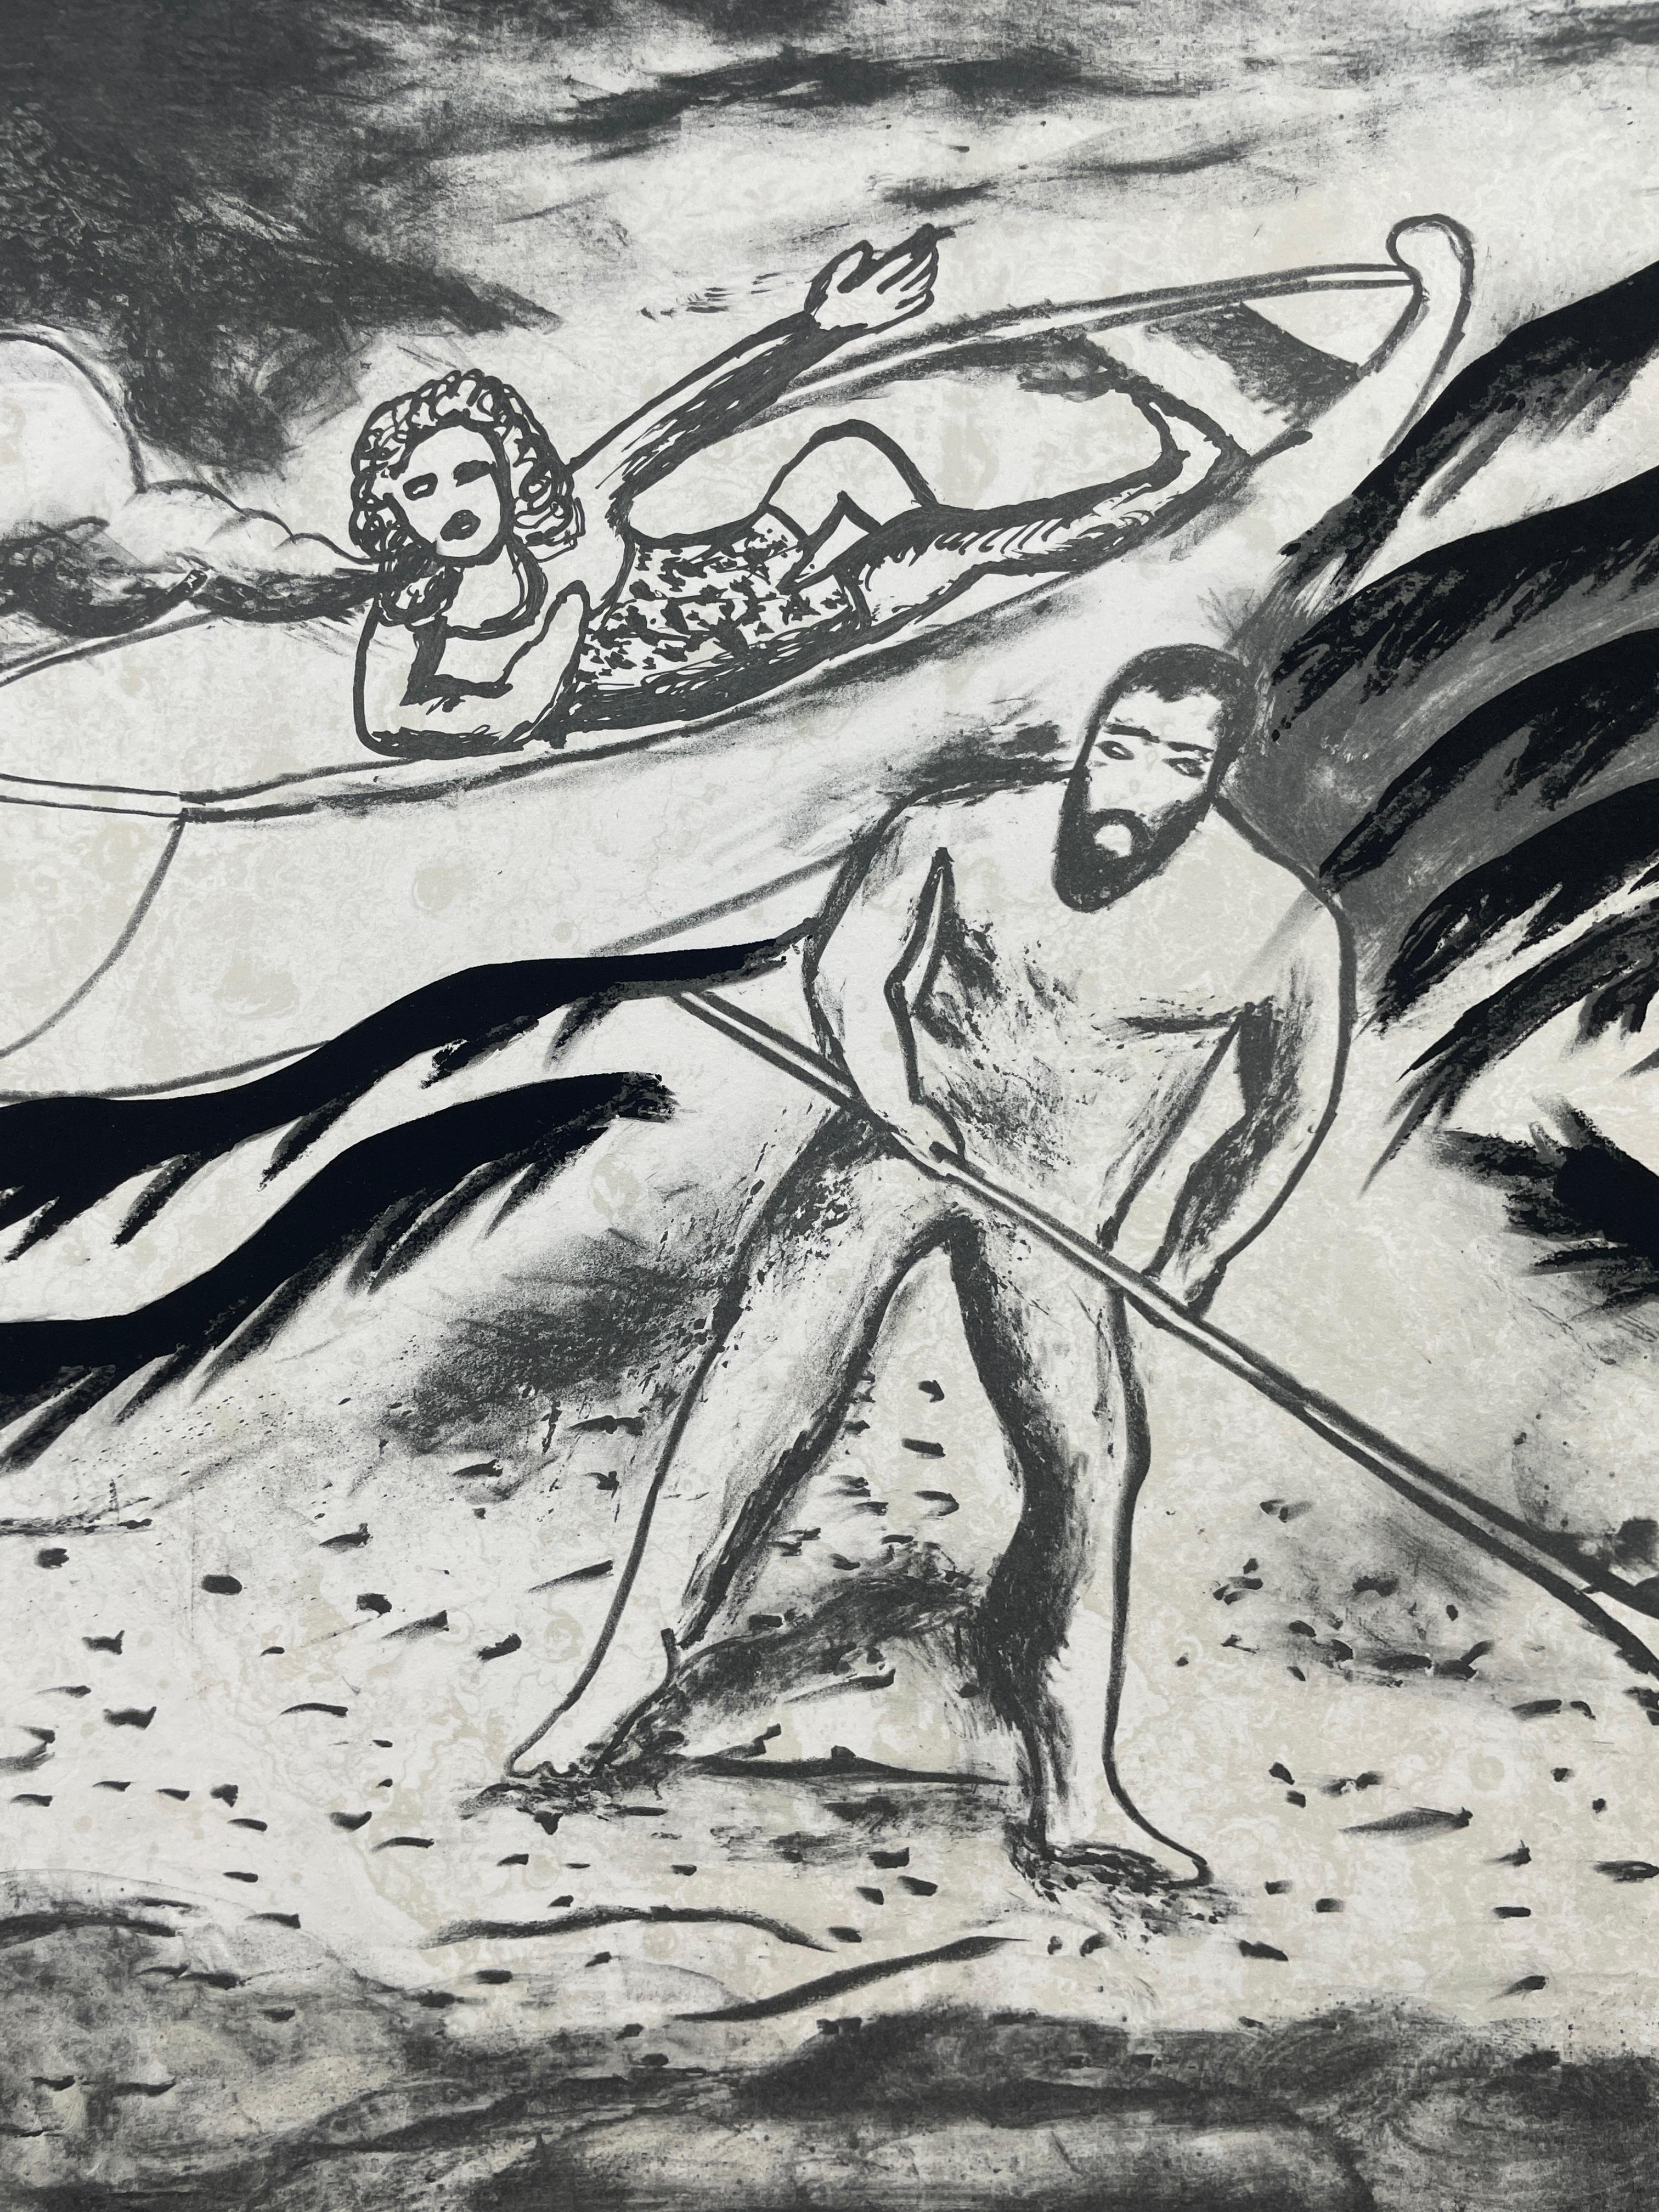 Des paysages marins fantasques et mystérieux, des animaux et des figures mythologiques se mêlent à cet ensemble expressif de lithographies en noir et blanc d'Enzo Cucchi. L'ensemble complet de cinq lithographies en couleurs, sur papier Fabriano